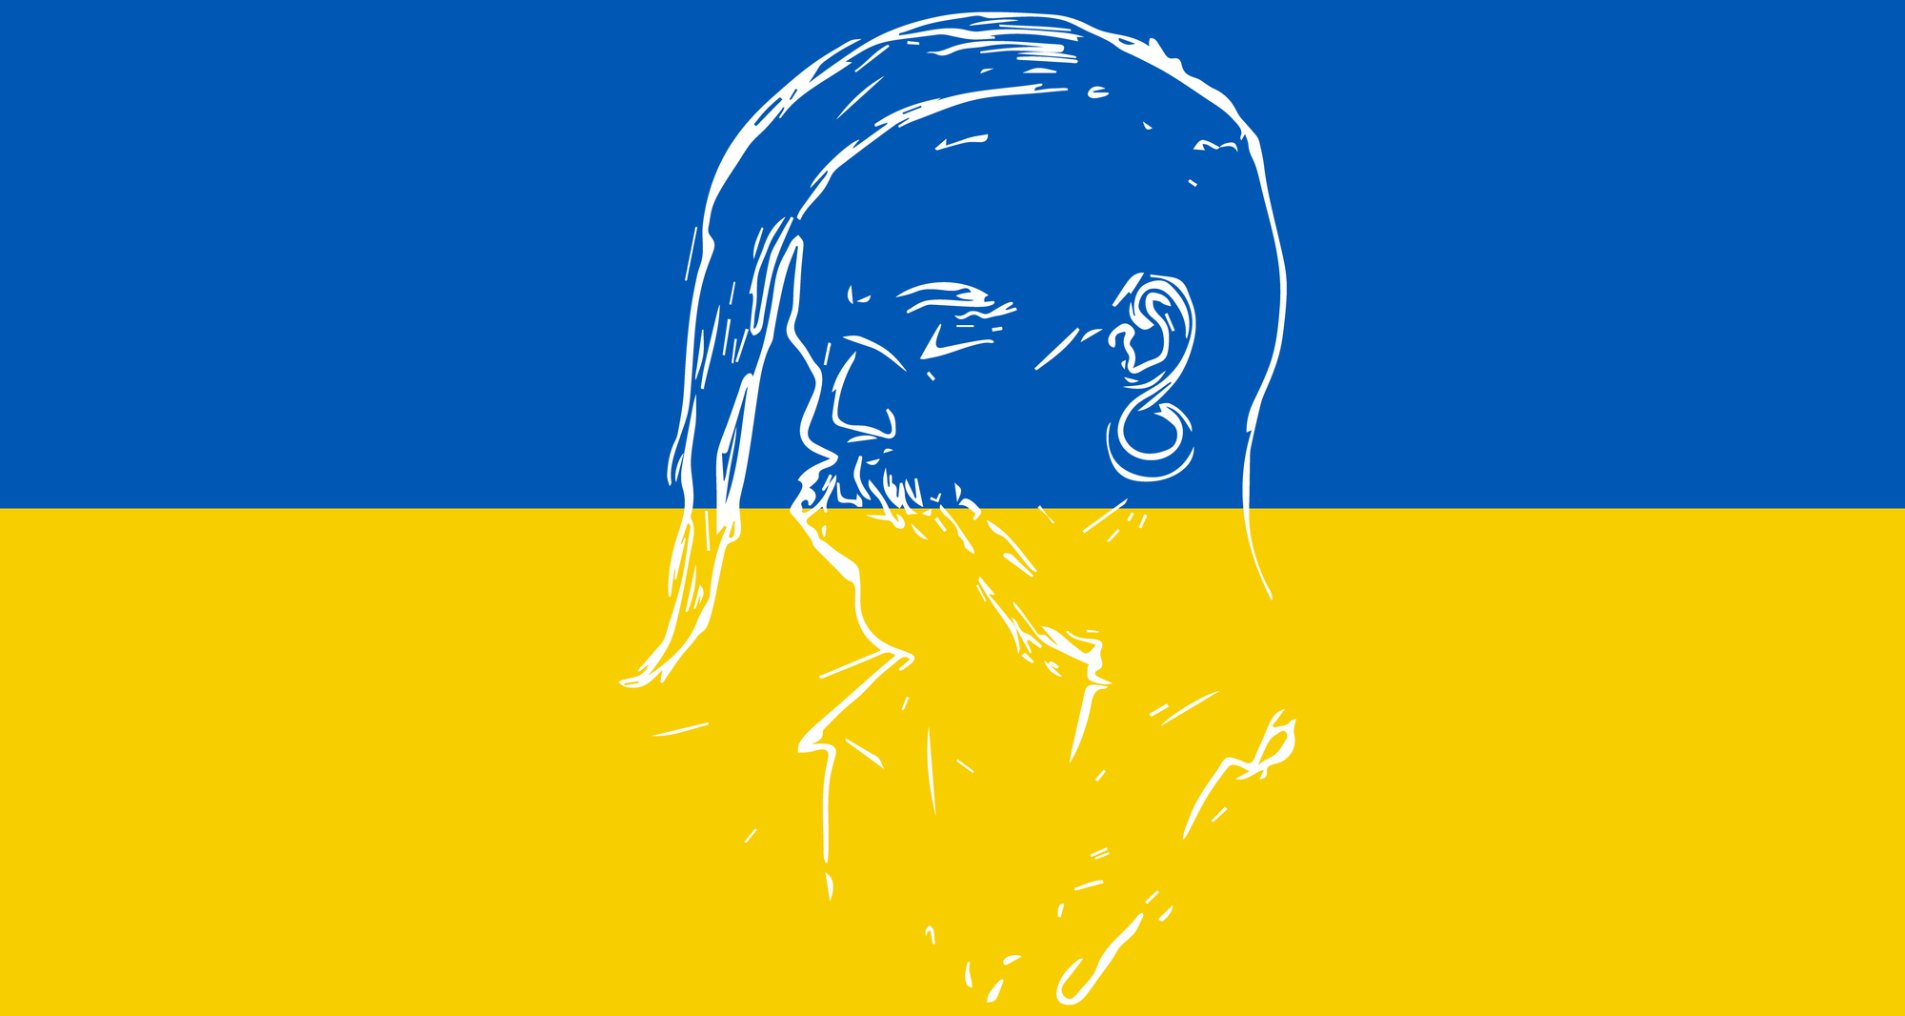 Прапор України з профілем козака